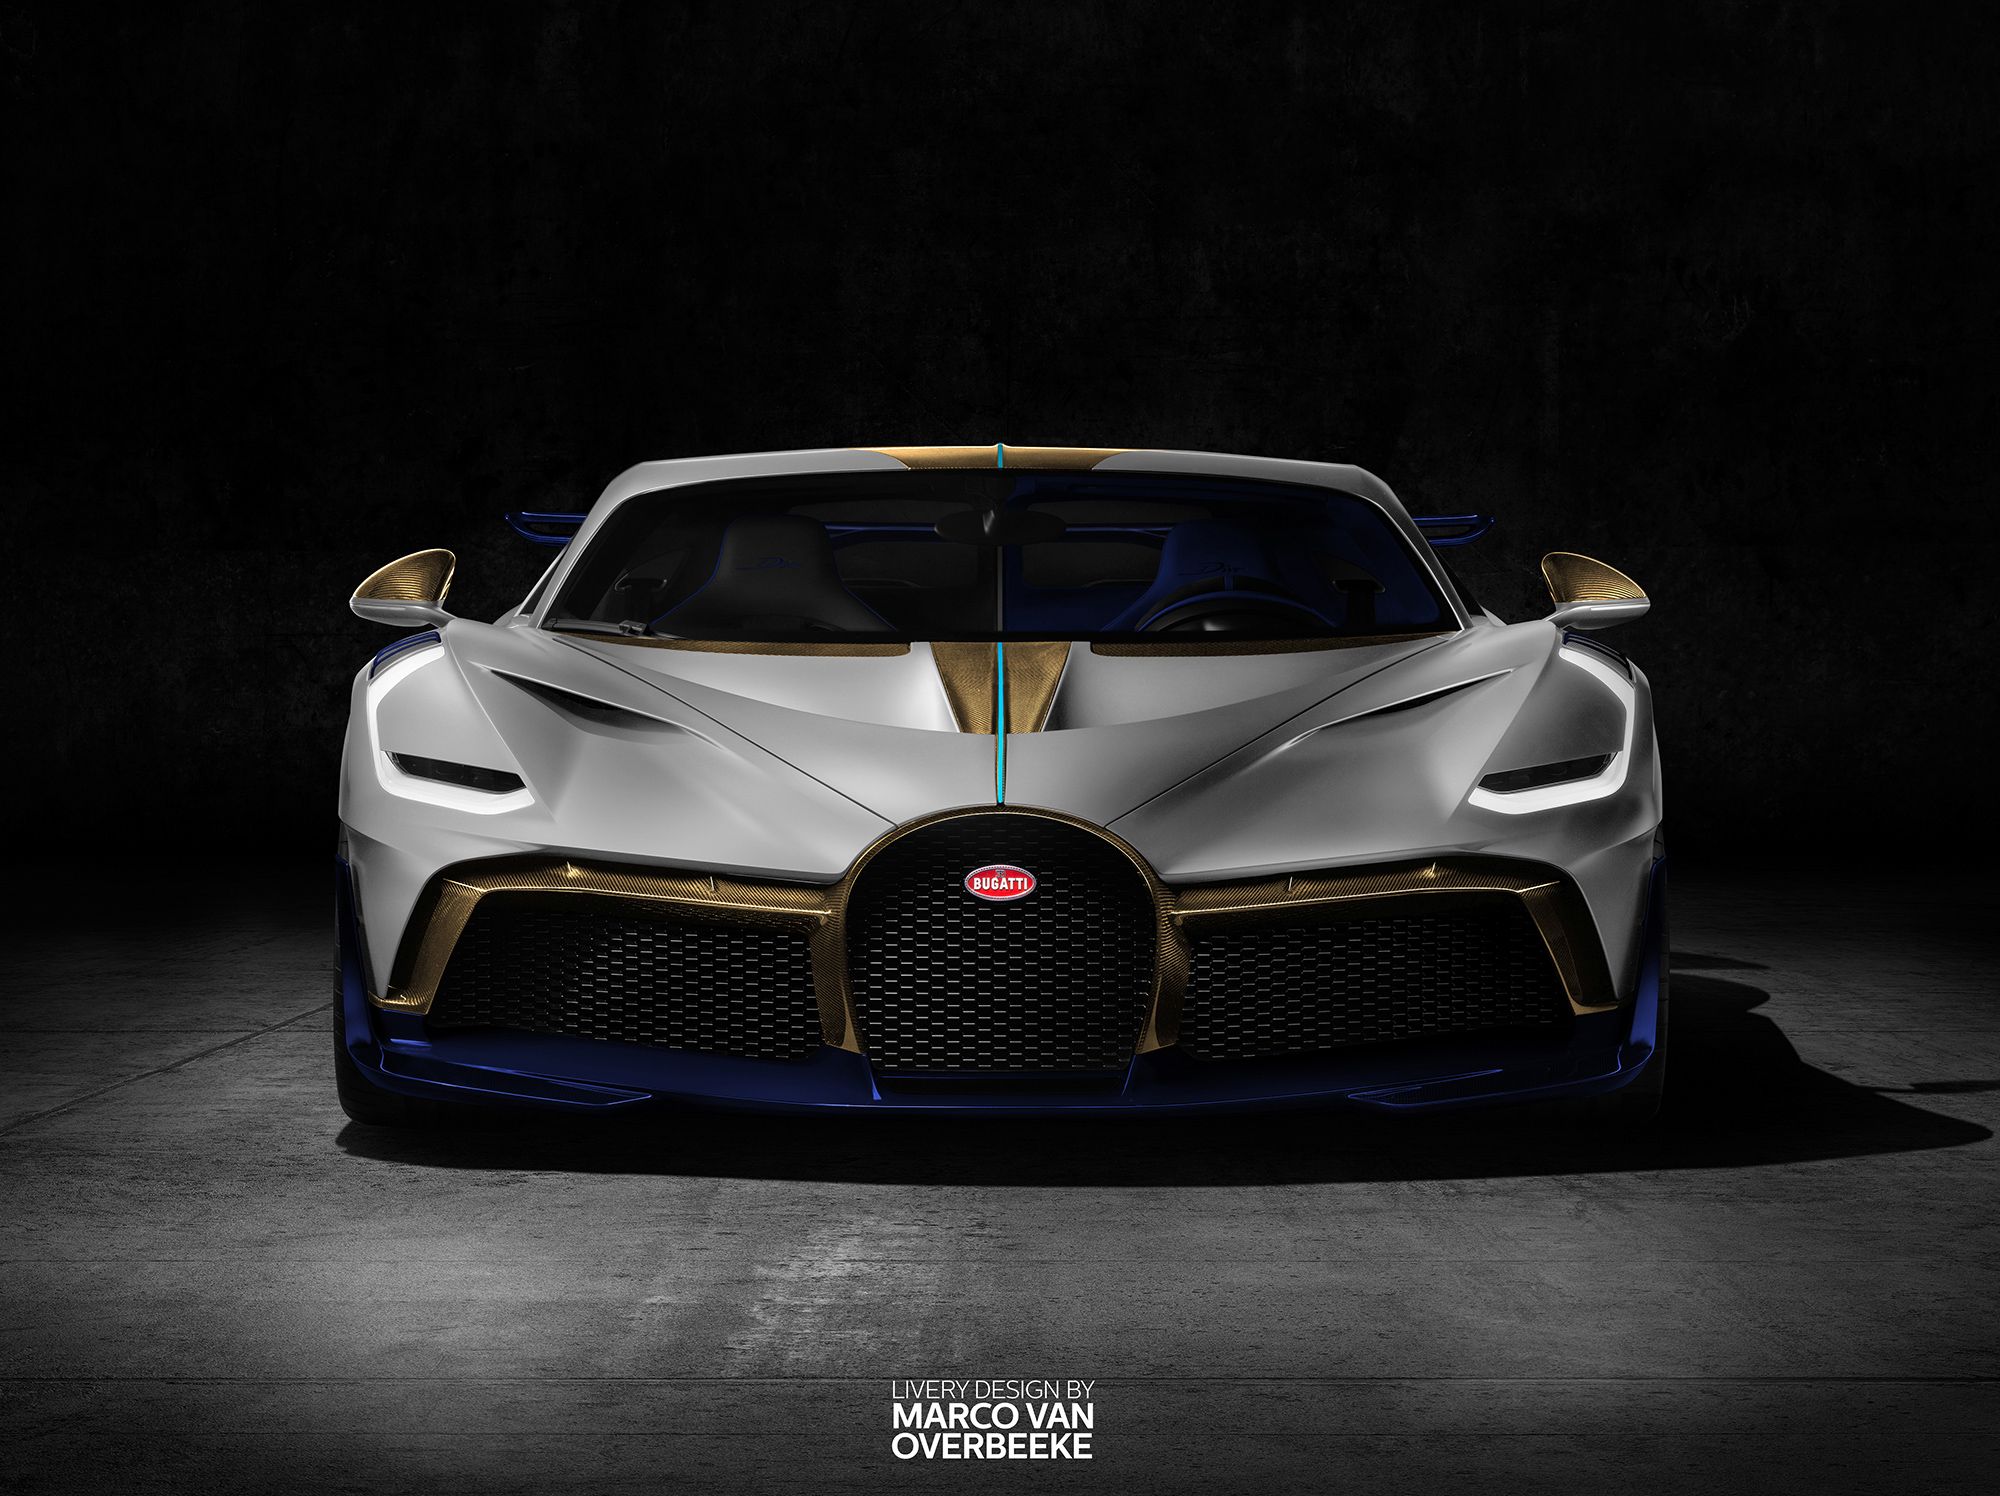 White Bugatti Divo, HD Cars, 4k Wallpaper, Image, Background, Photo and Picture